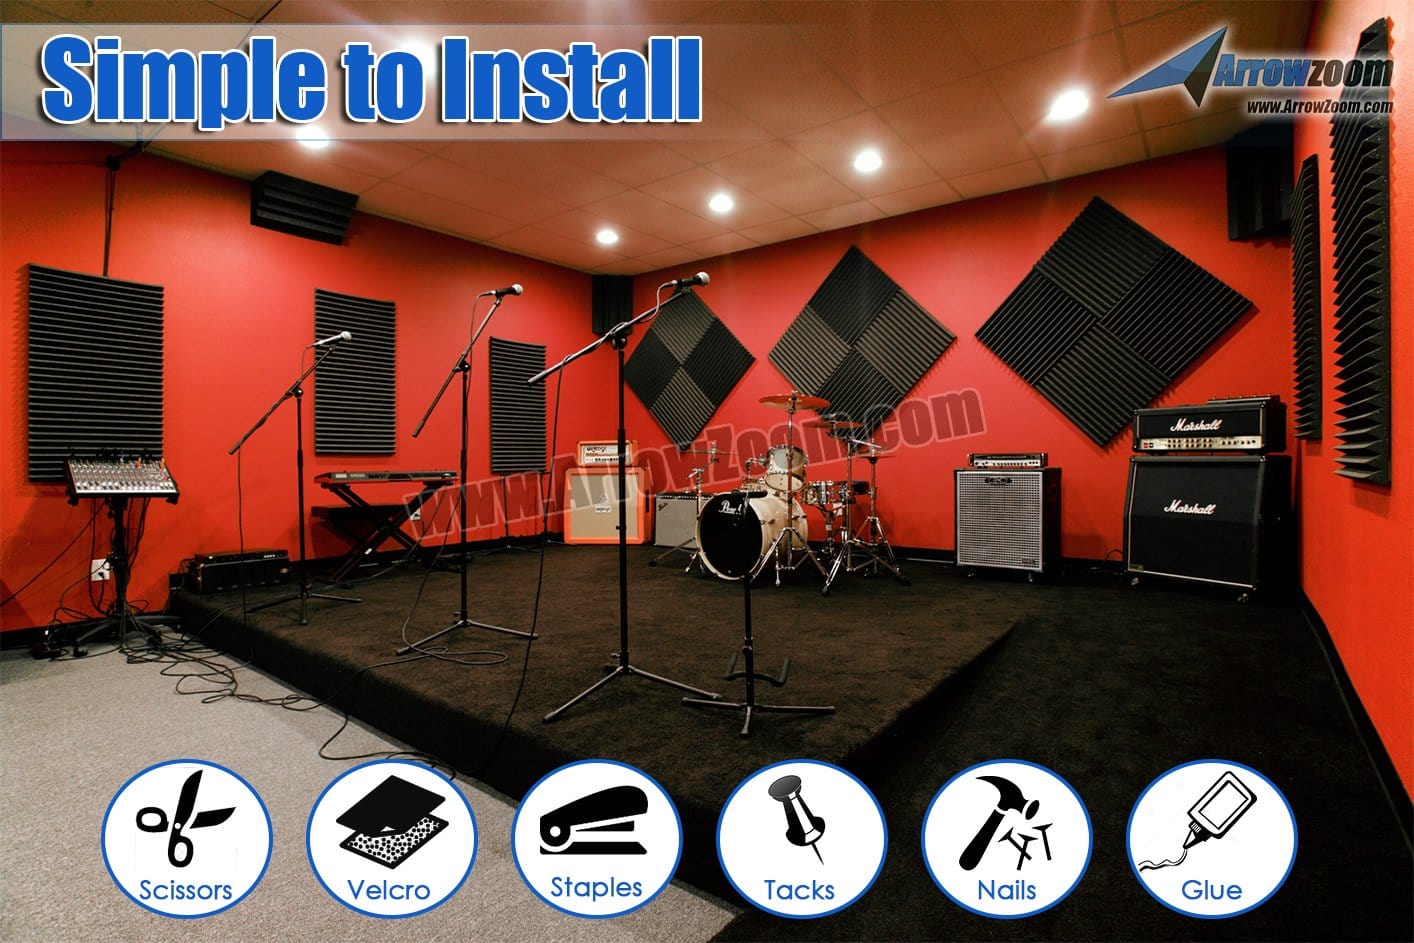 New 96 pcs Wedge Tiles Acoustic Panels Sound Absorption Studio Soundproof Foam 7 Colors KK1134